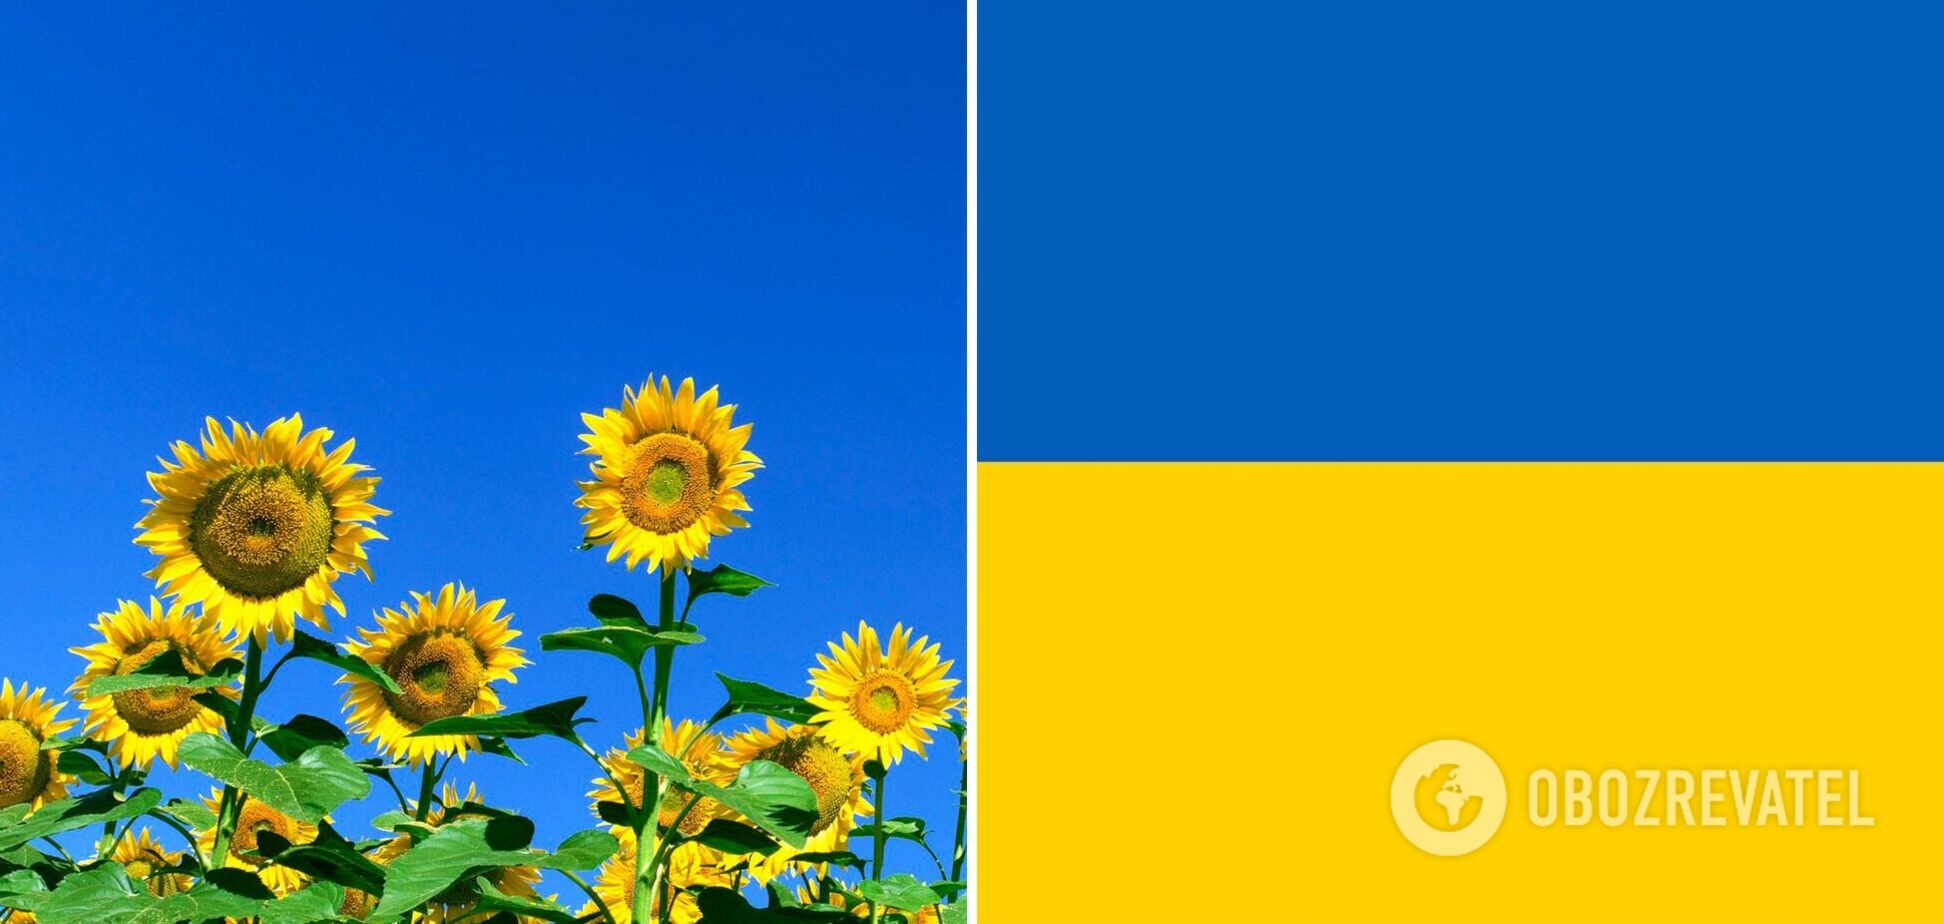 Цвета украинского флага означают свободу и энергию